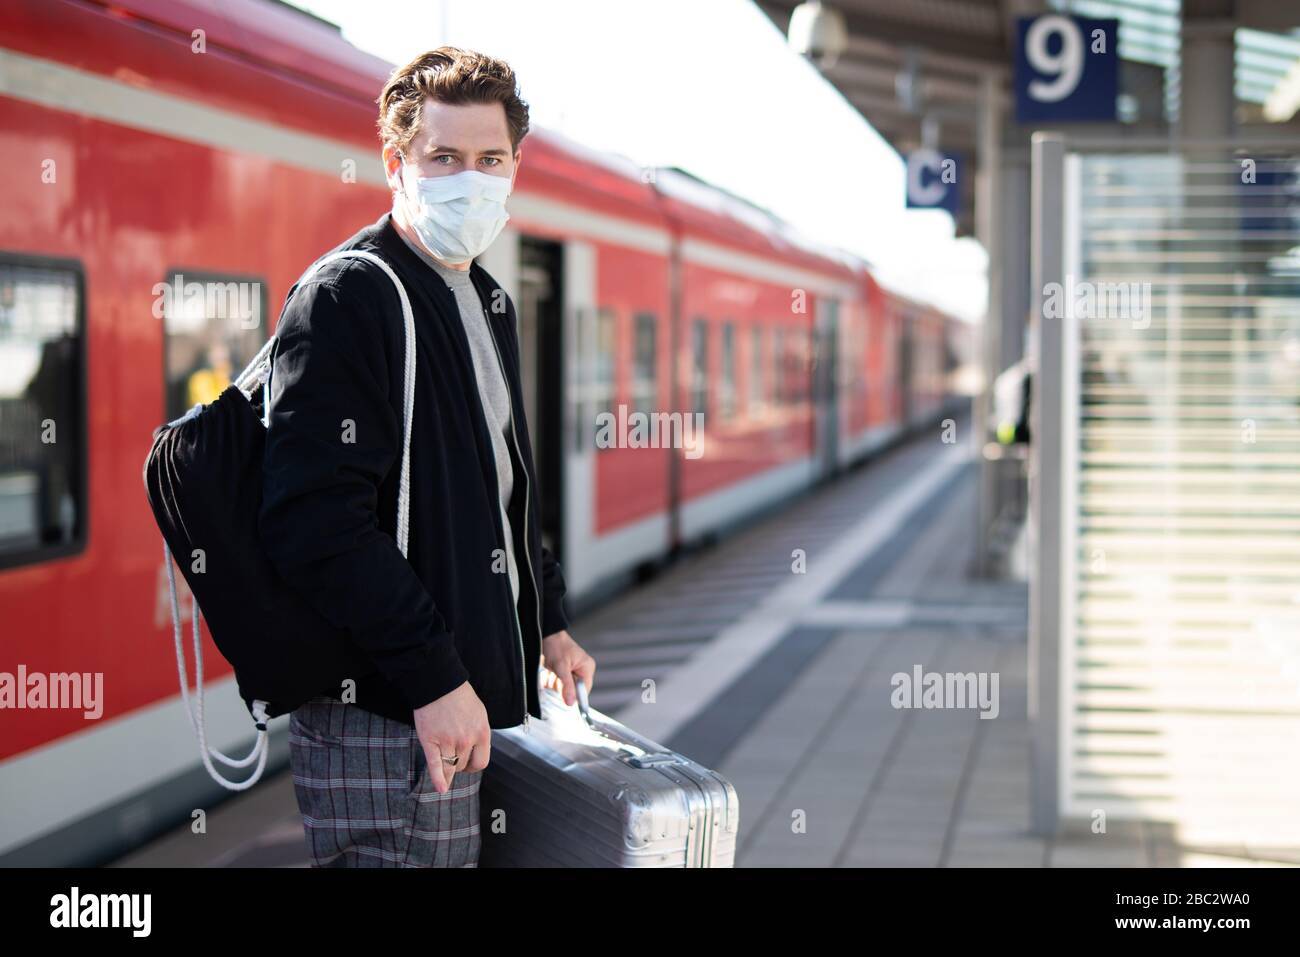 Uomo con una valigia sulla piattaforma, ha una maschera facciale e guanti contro l'infezione con il virus corona Foto Stock